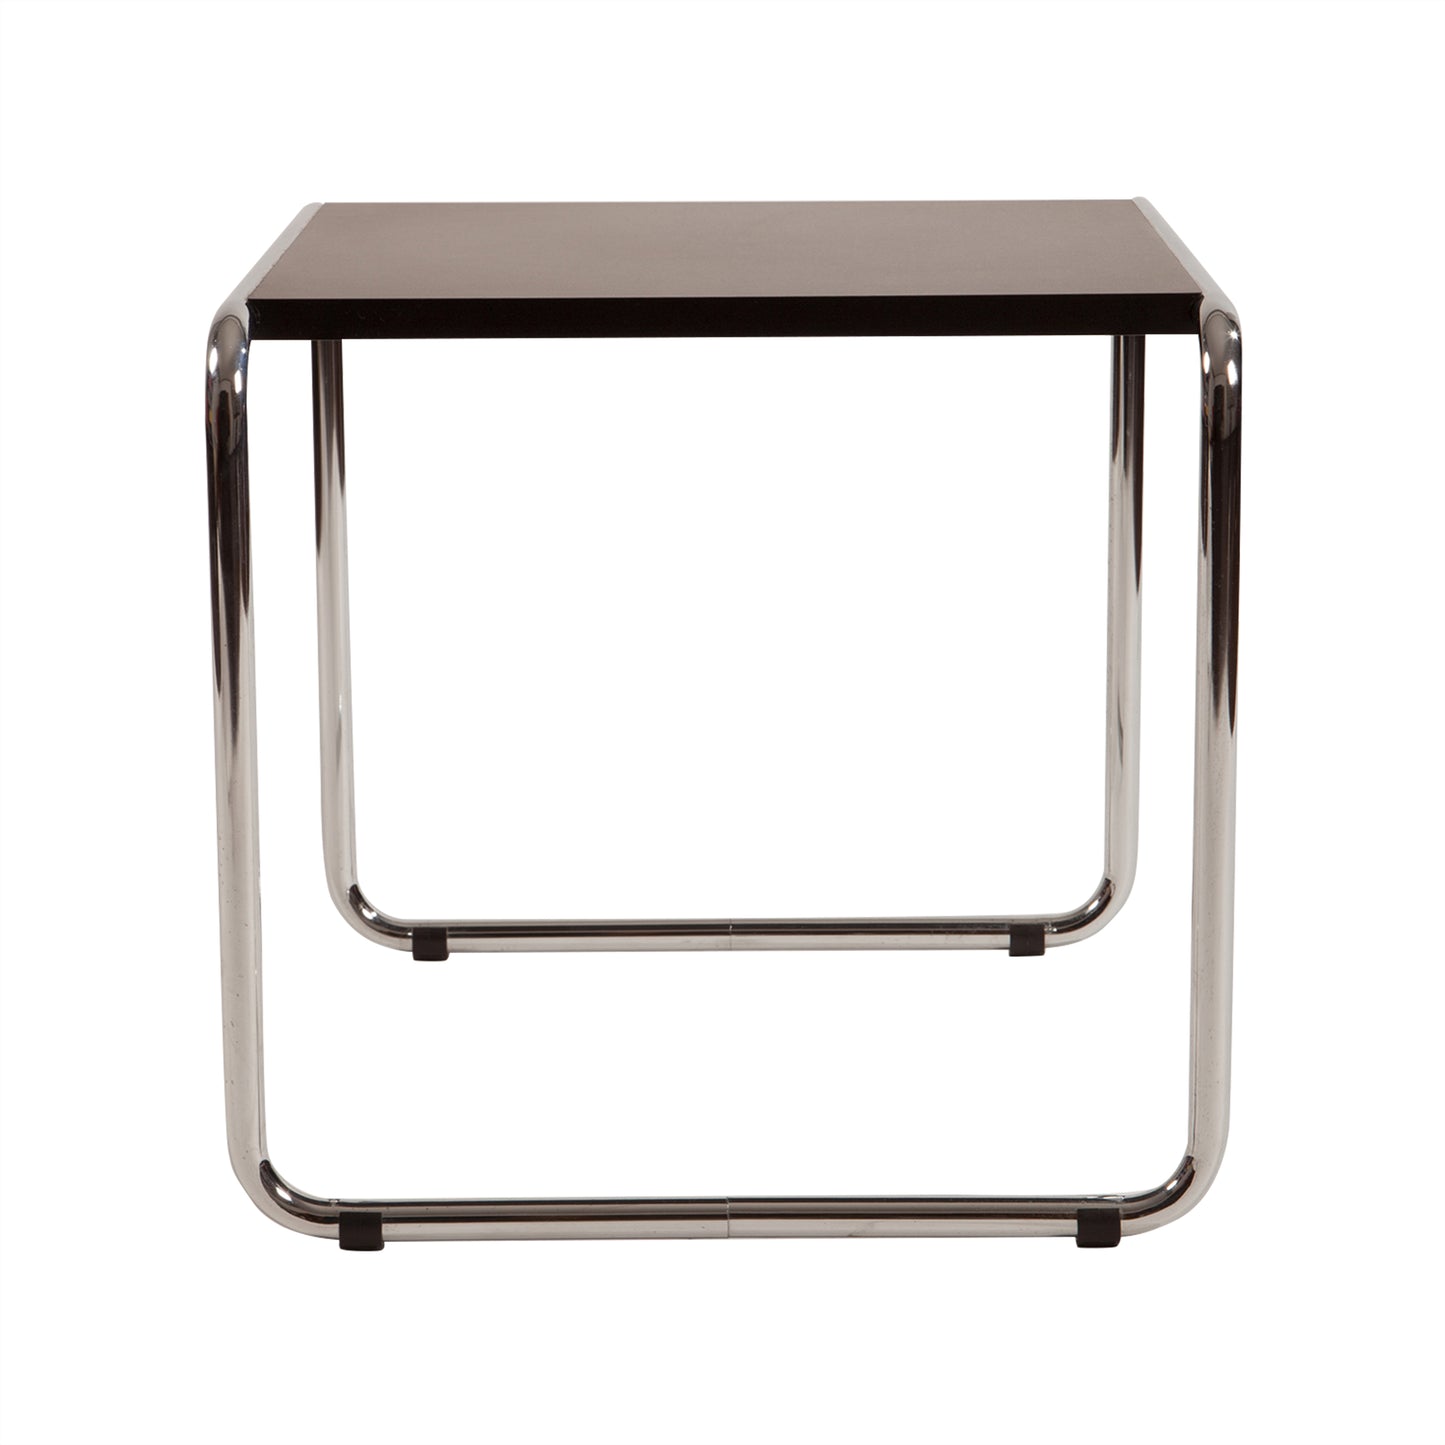 Laccio table style | Black | Front 